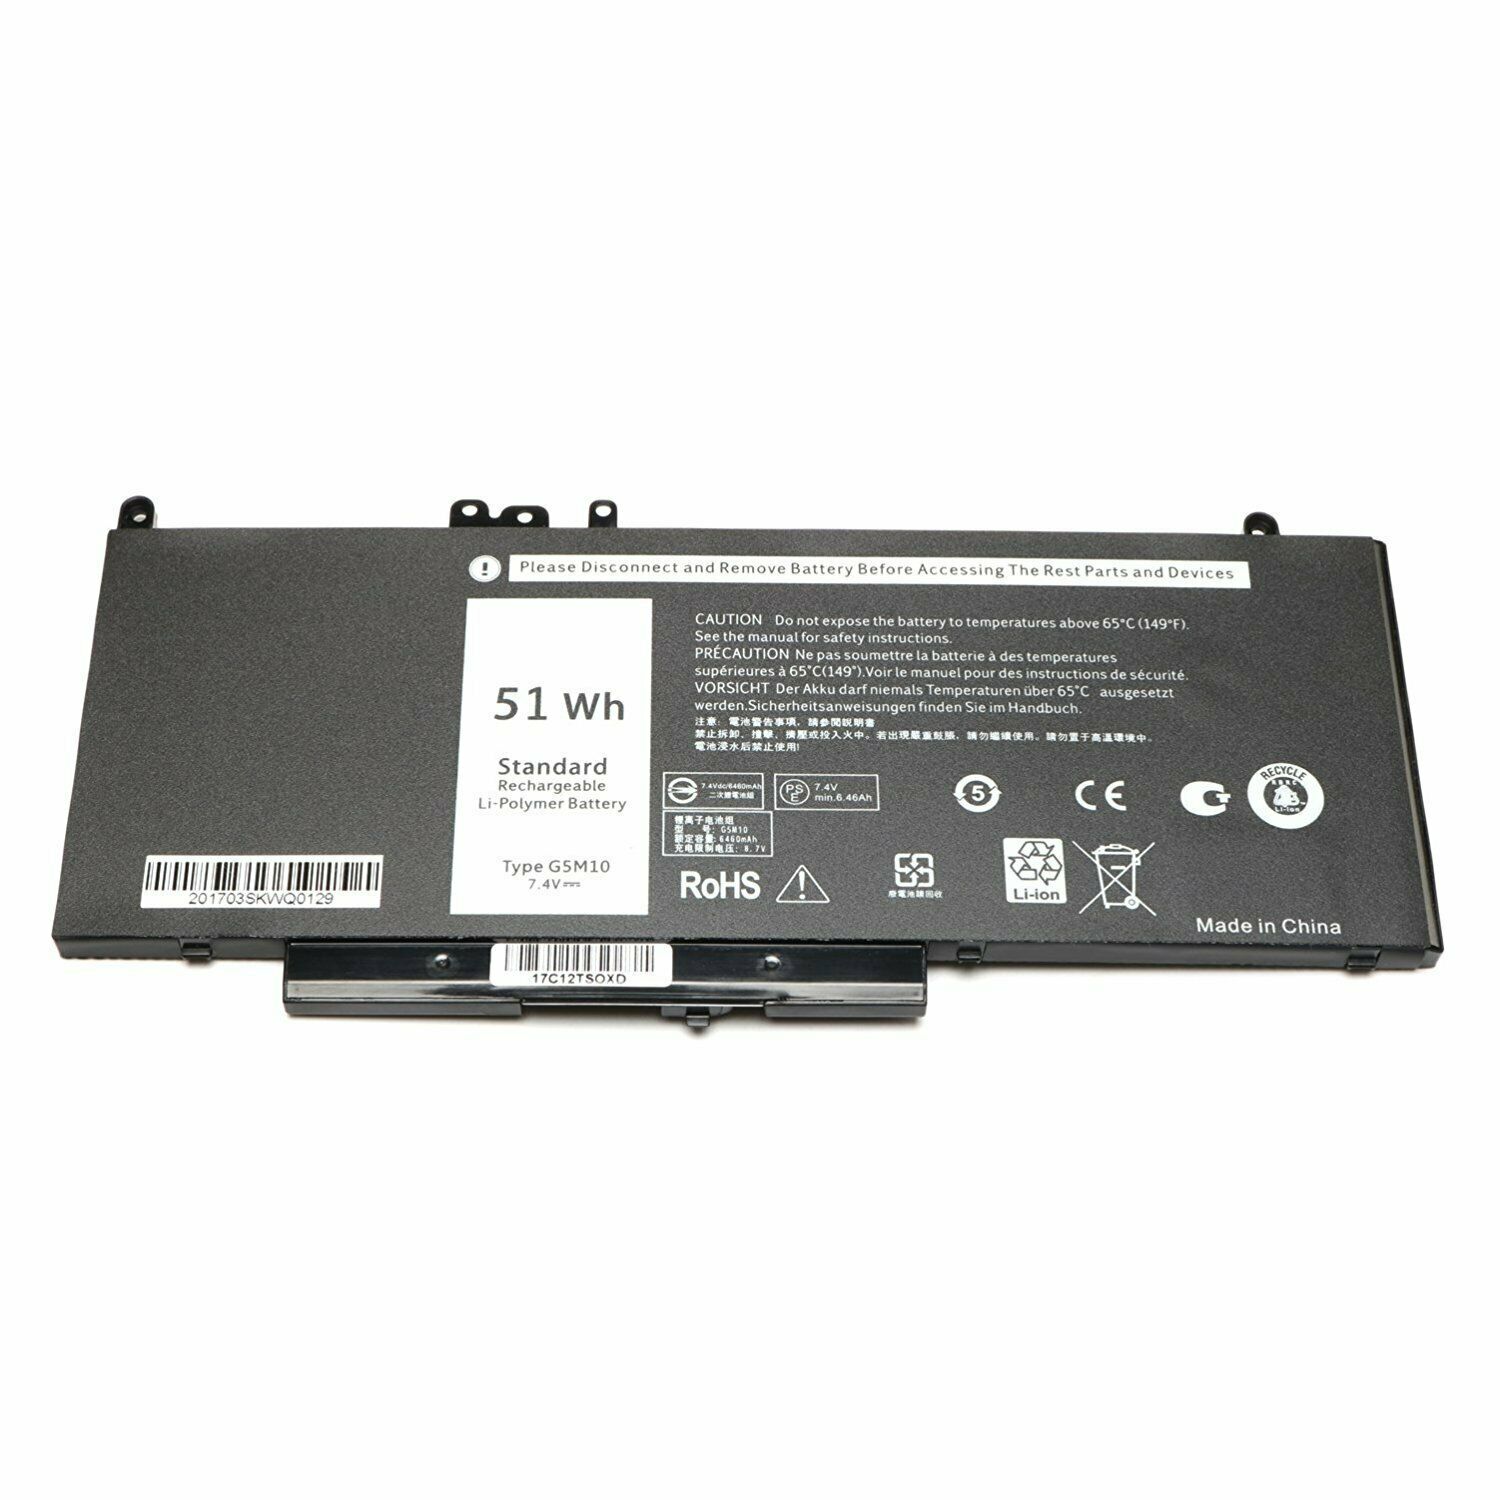 G5M10 WYJC2 1KY05 Dell Latitude E5450 E5470 E5550 E5570 compatible battery